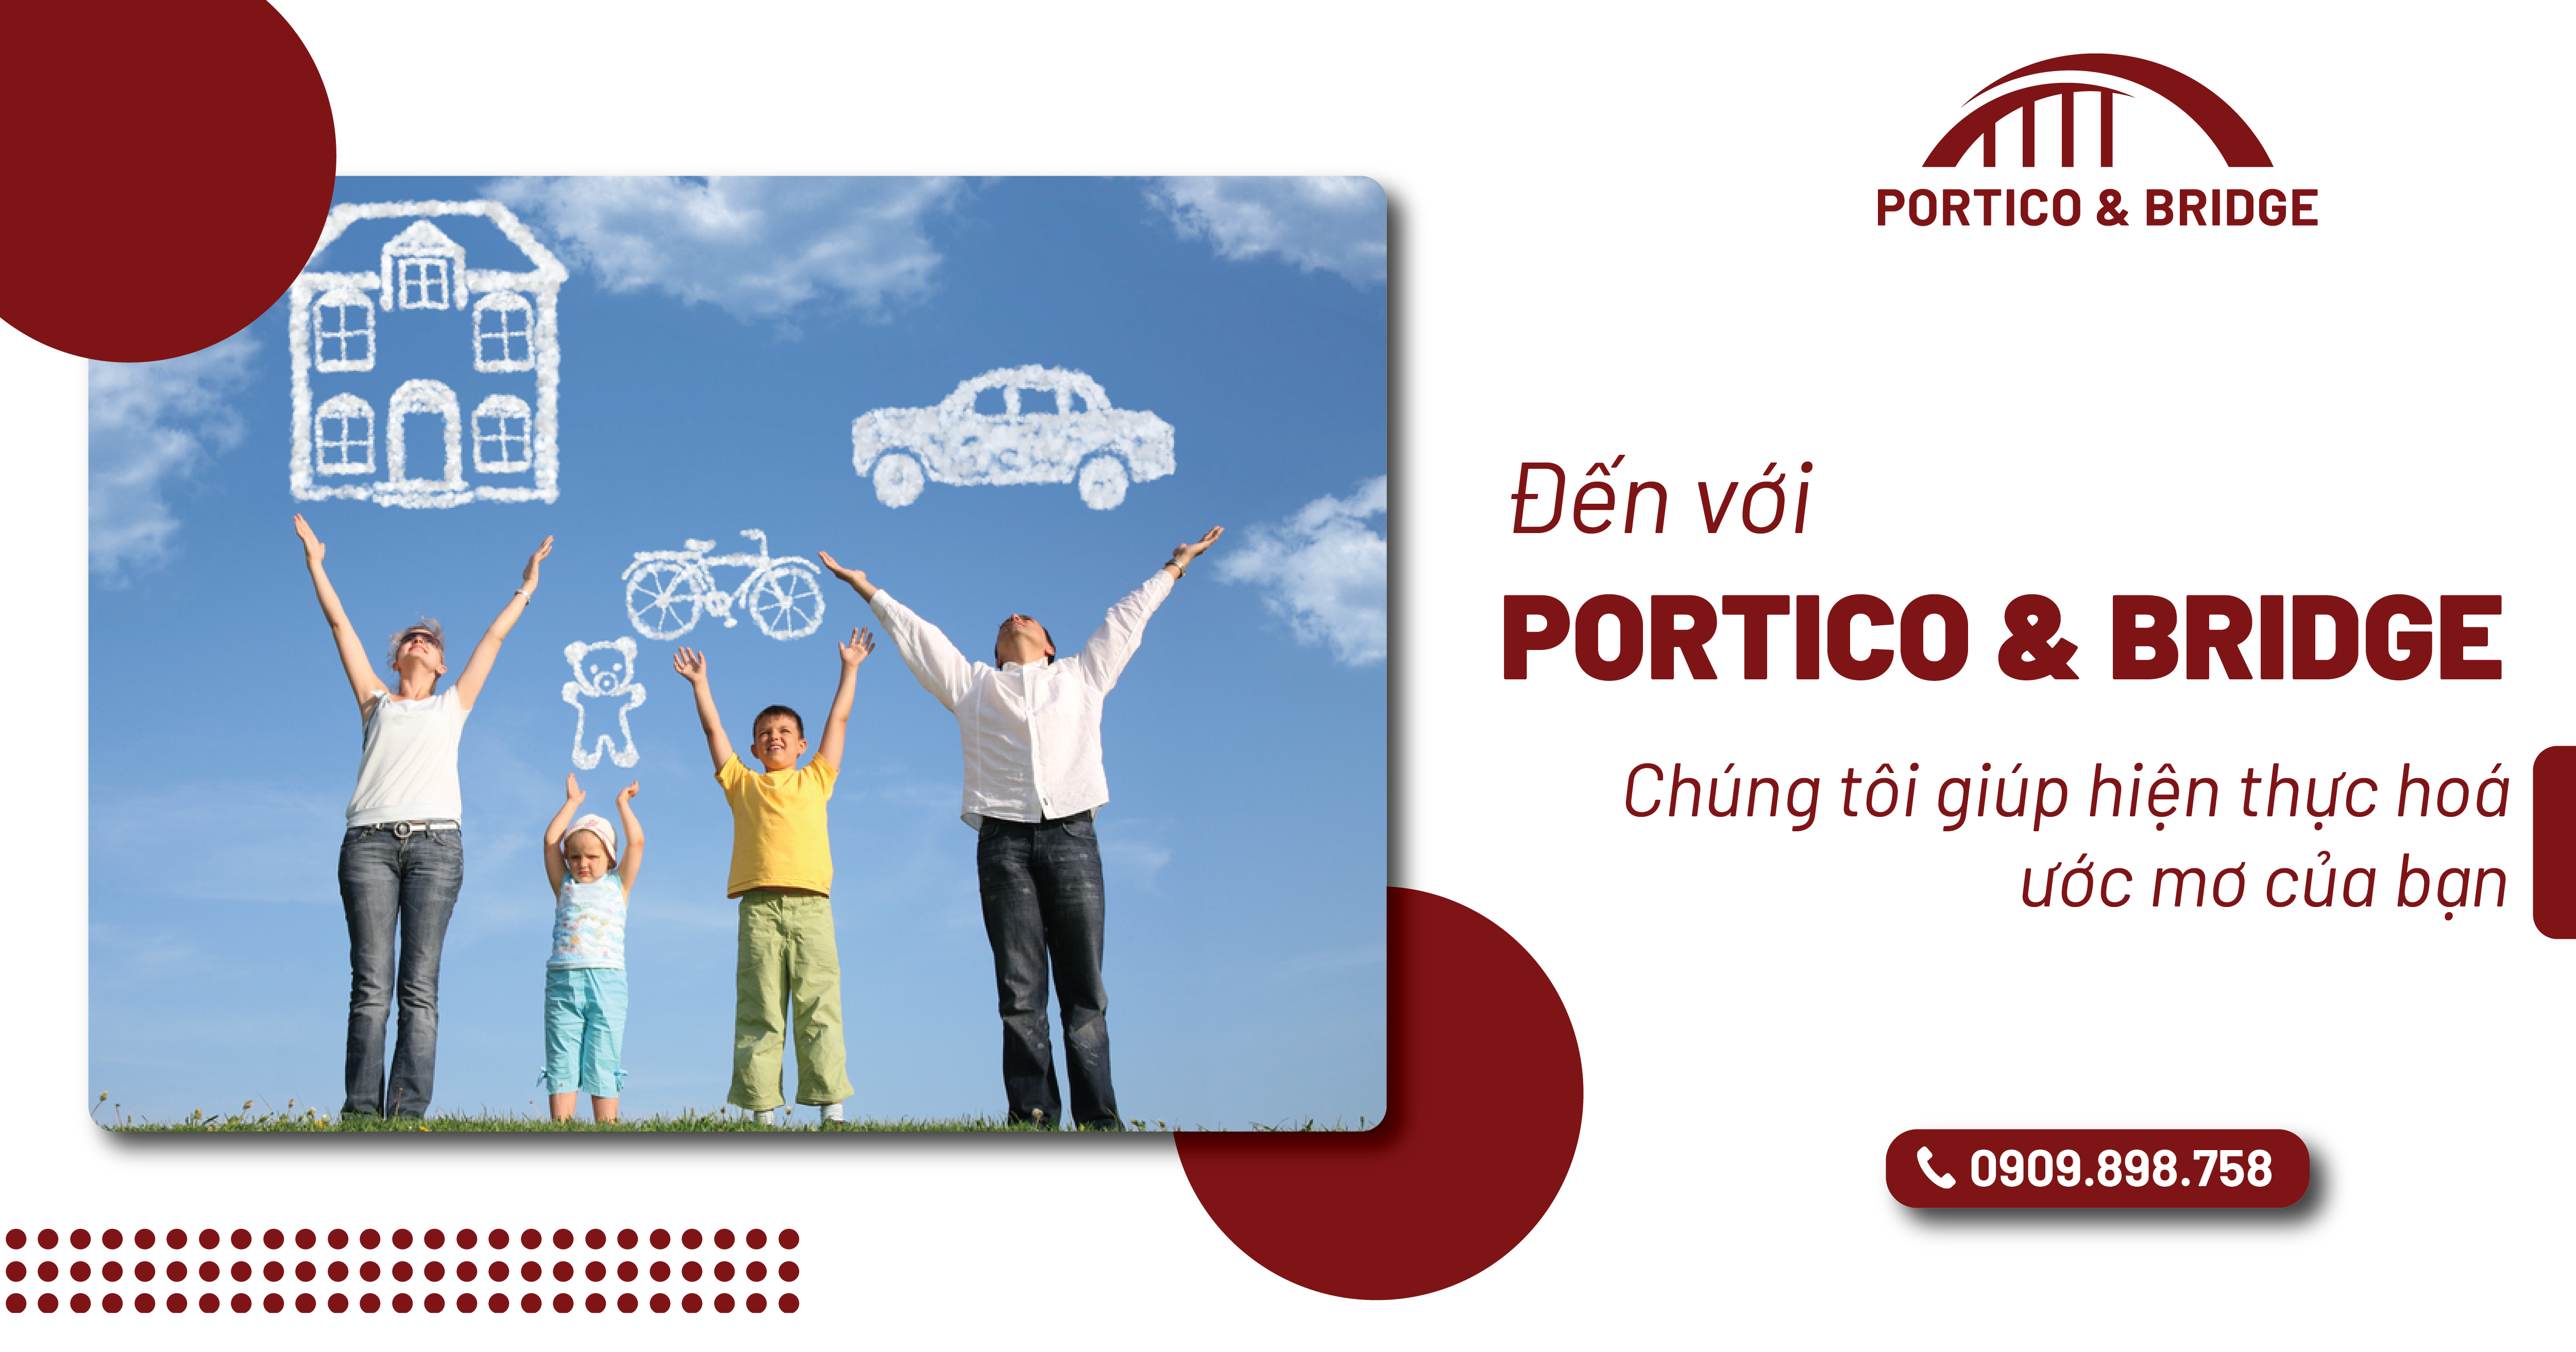 Đến với Portico & Bridge, chúng tôi giúp hiện thực hóa ước mơ của bạn 